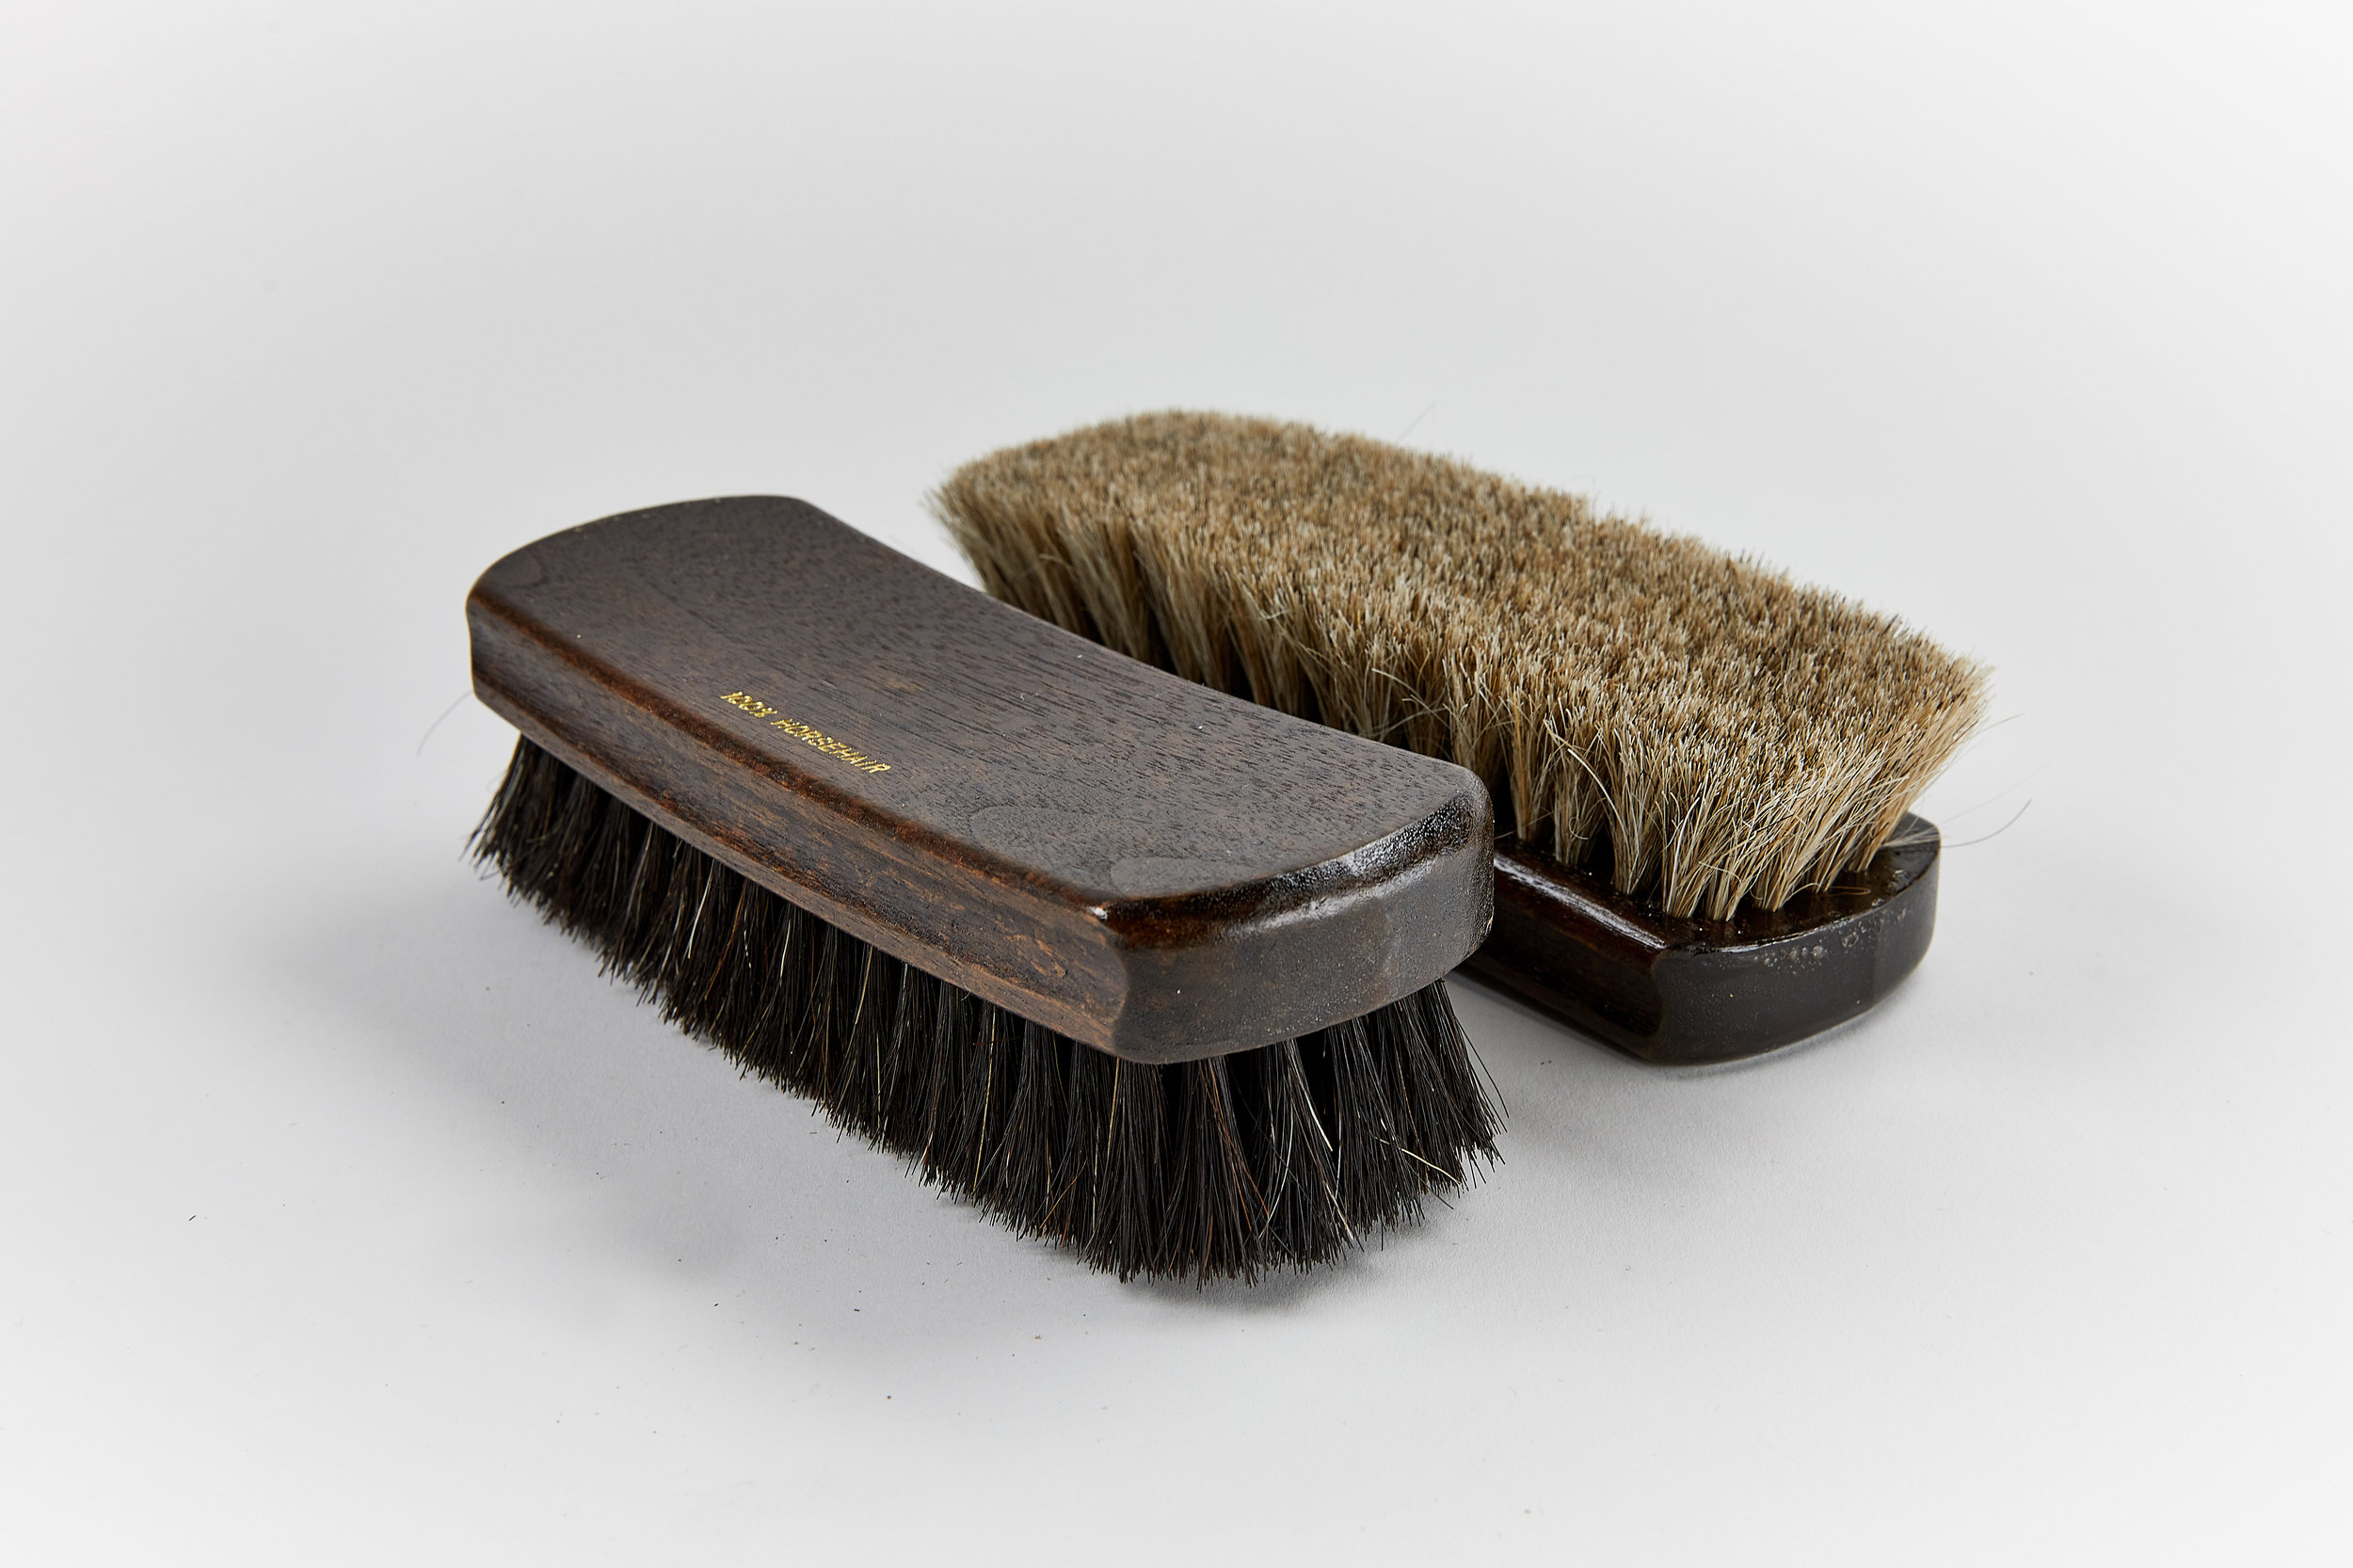 Felton 100 Wooden Horse Hair Shoe Brush, Wood Shoe Brush, Shoe